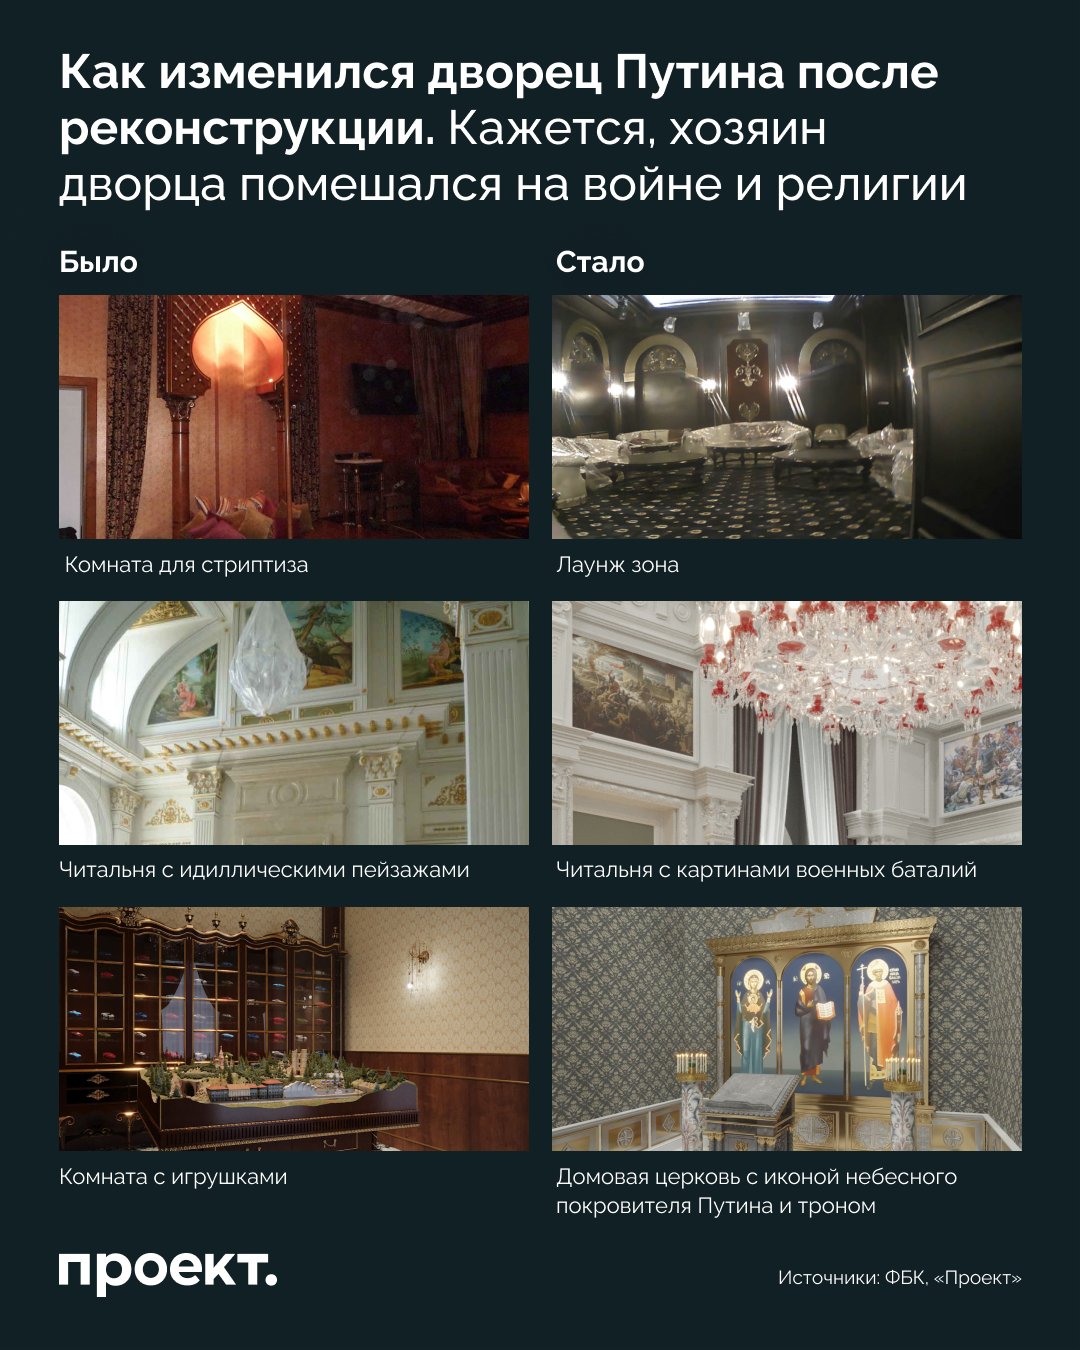 Во дворце Путина повесили люстру за 526 000 долларов: на фото везде роскошь